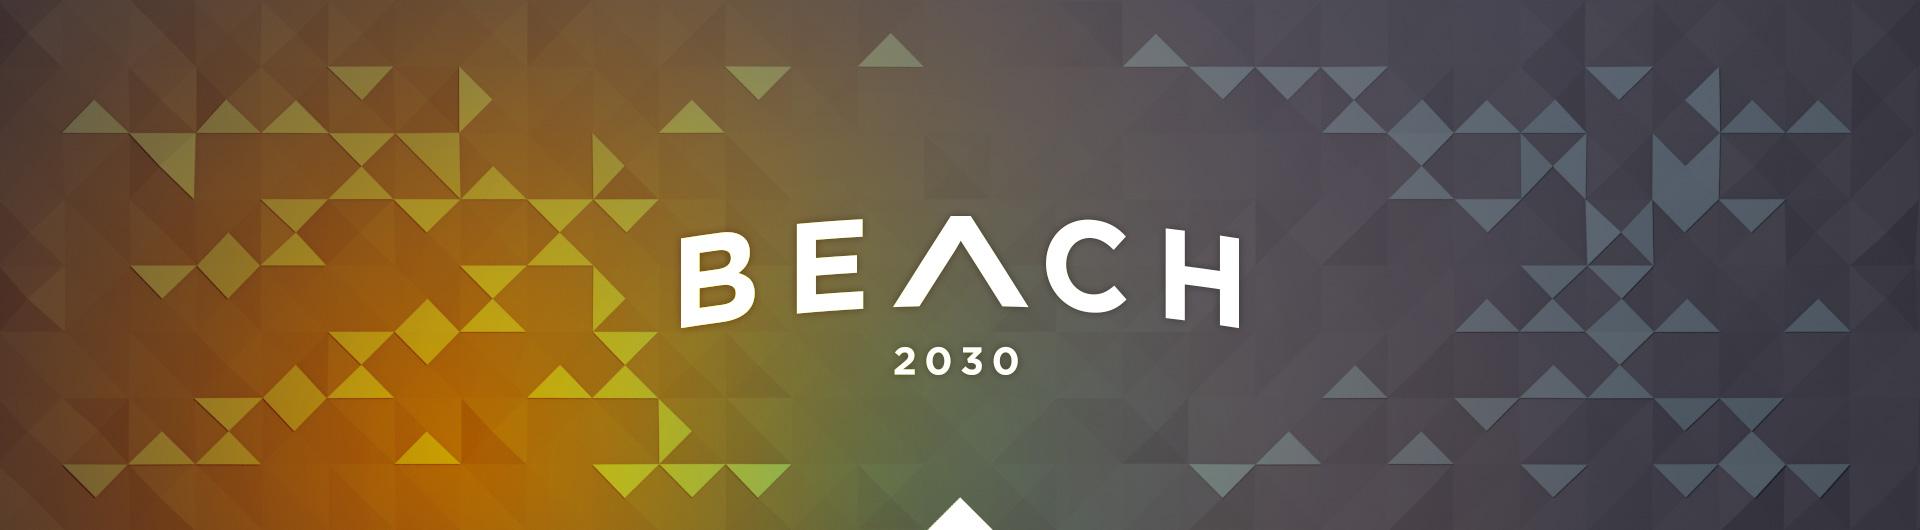 Beach 2030